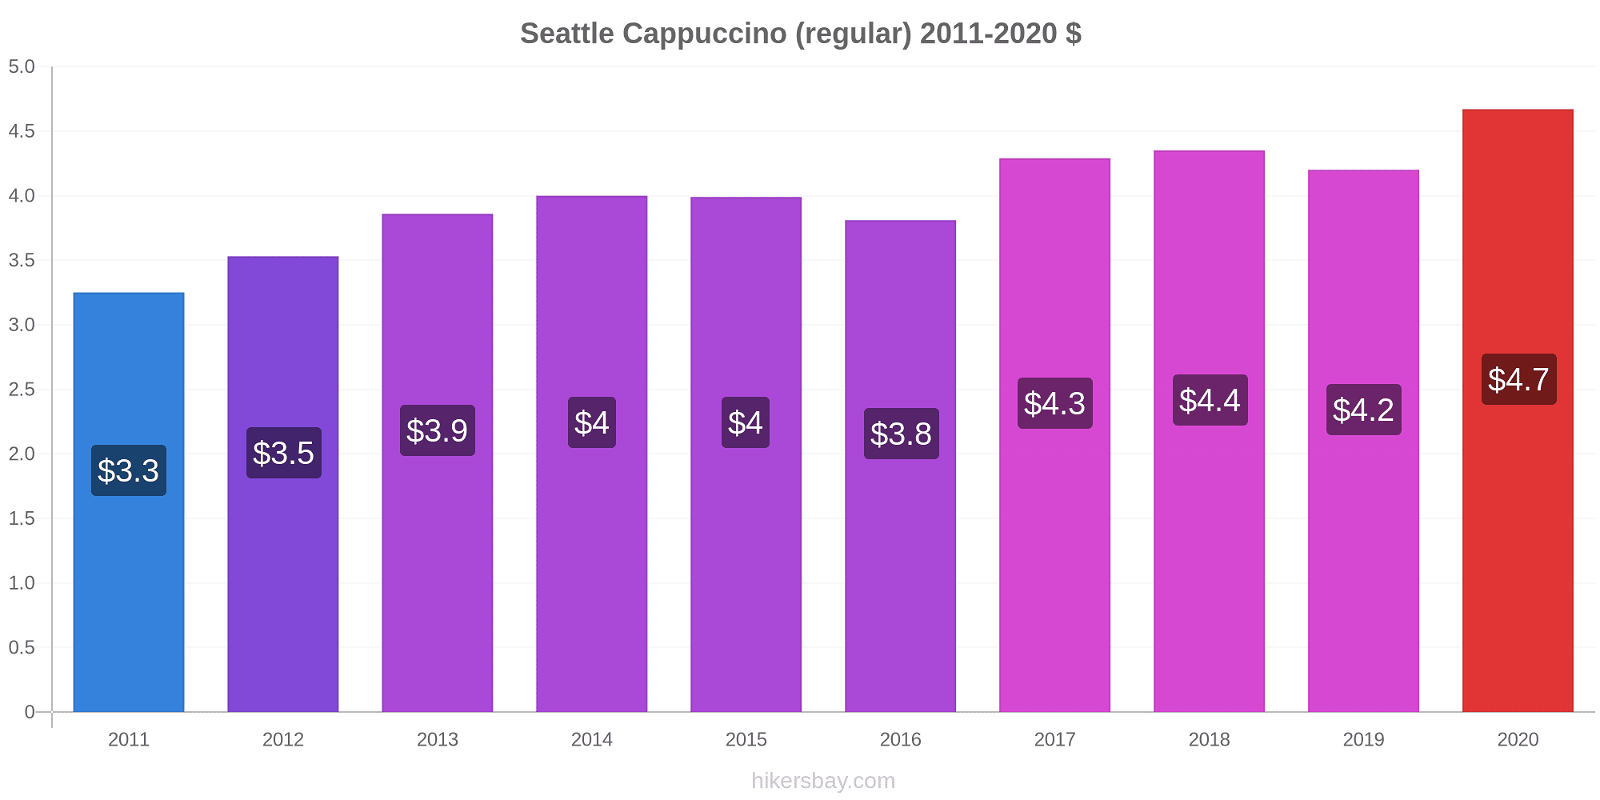 Seattle price changes Cappuccino (regular) hikersbay.com